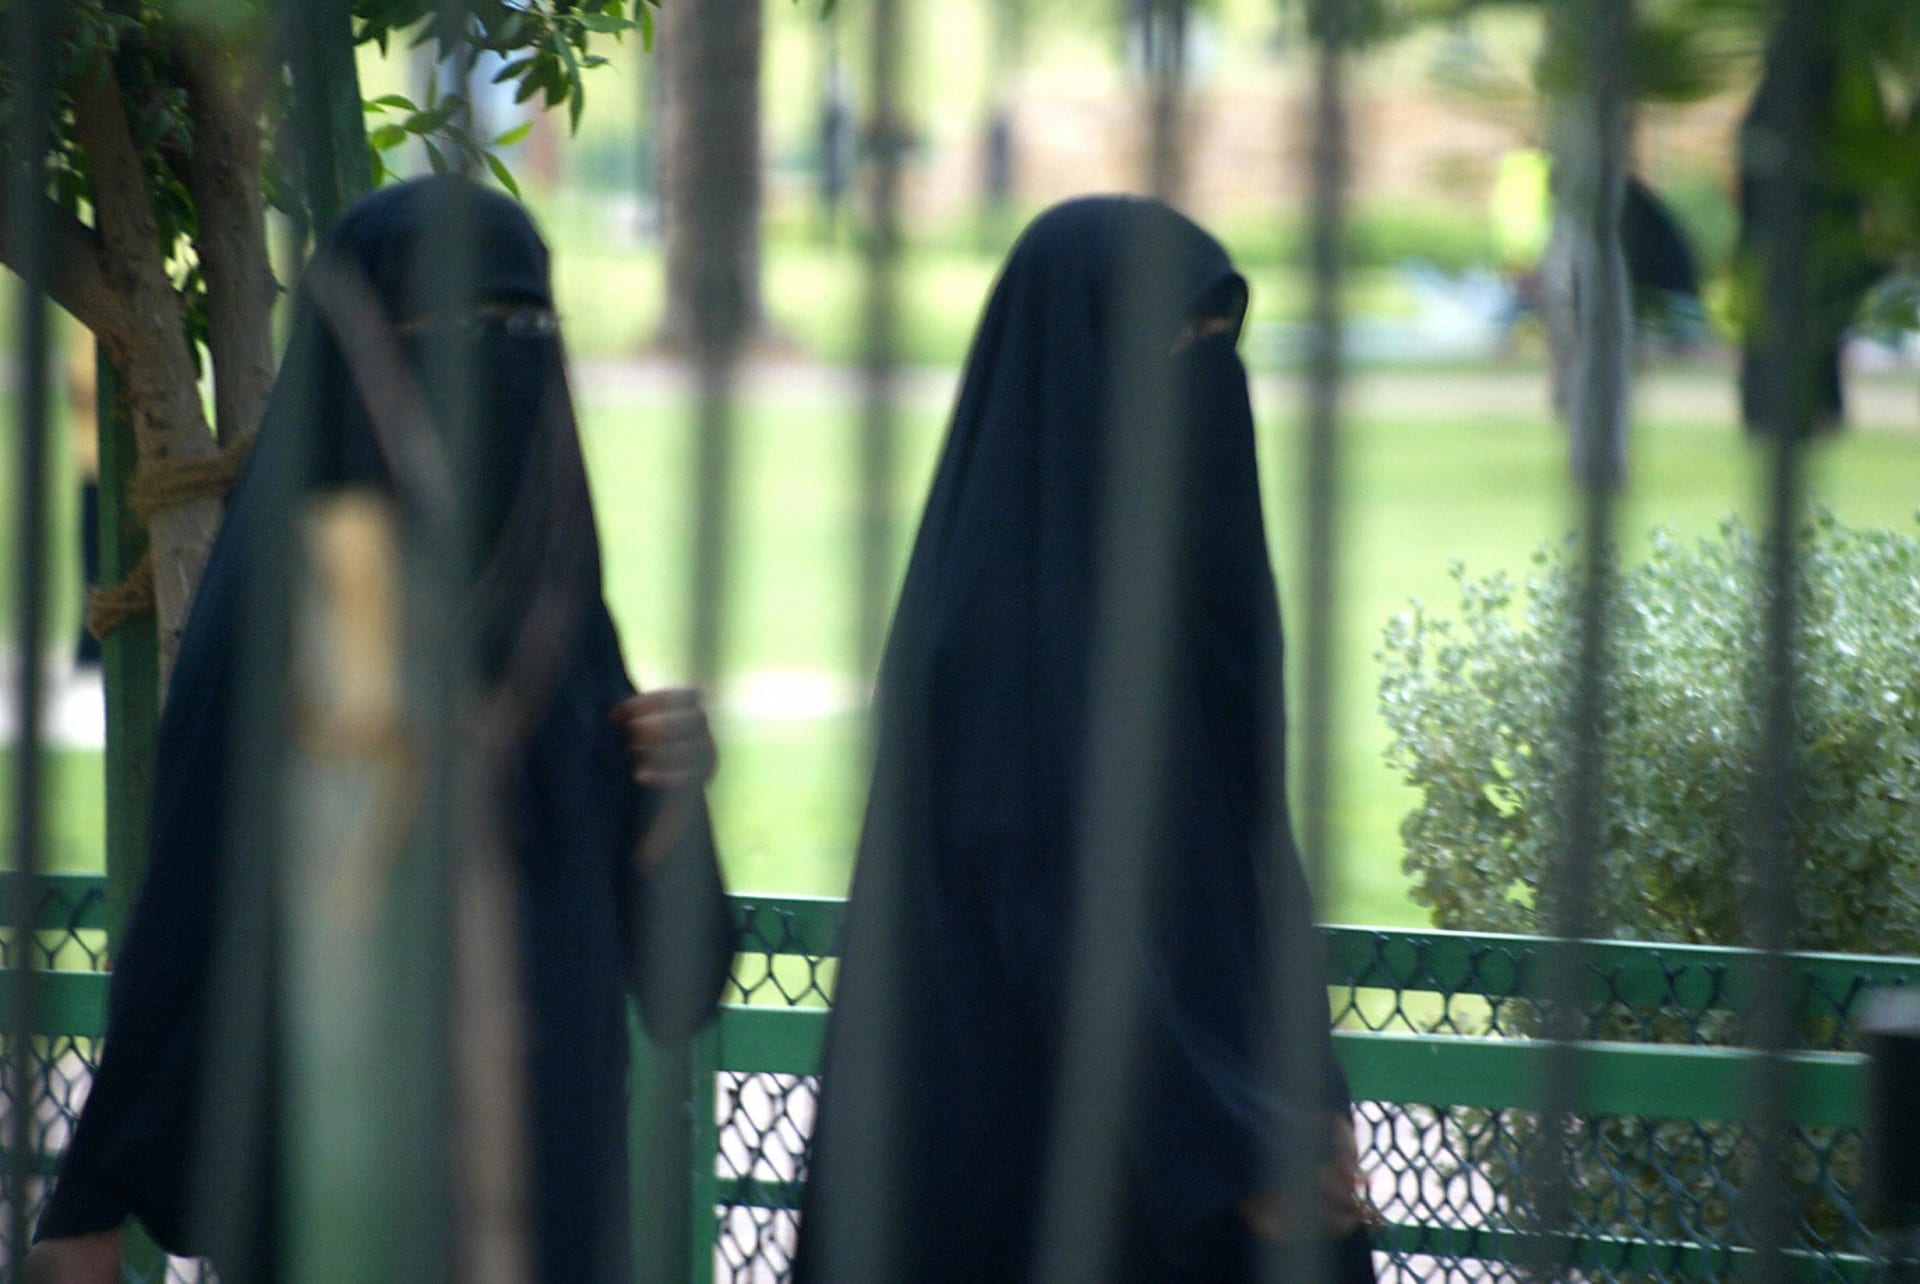 امرأة سعودية تستغيث بمحمد بن سلمان بعد طردها من منزلها.. وجمعية الإسكان المسؤولة ترد ببيان